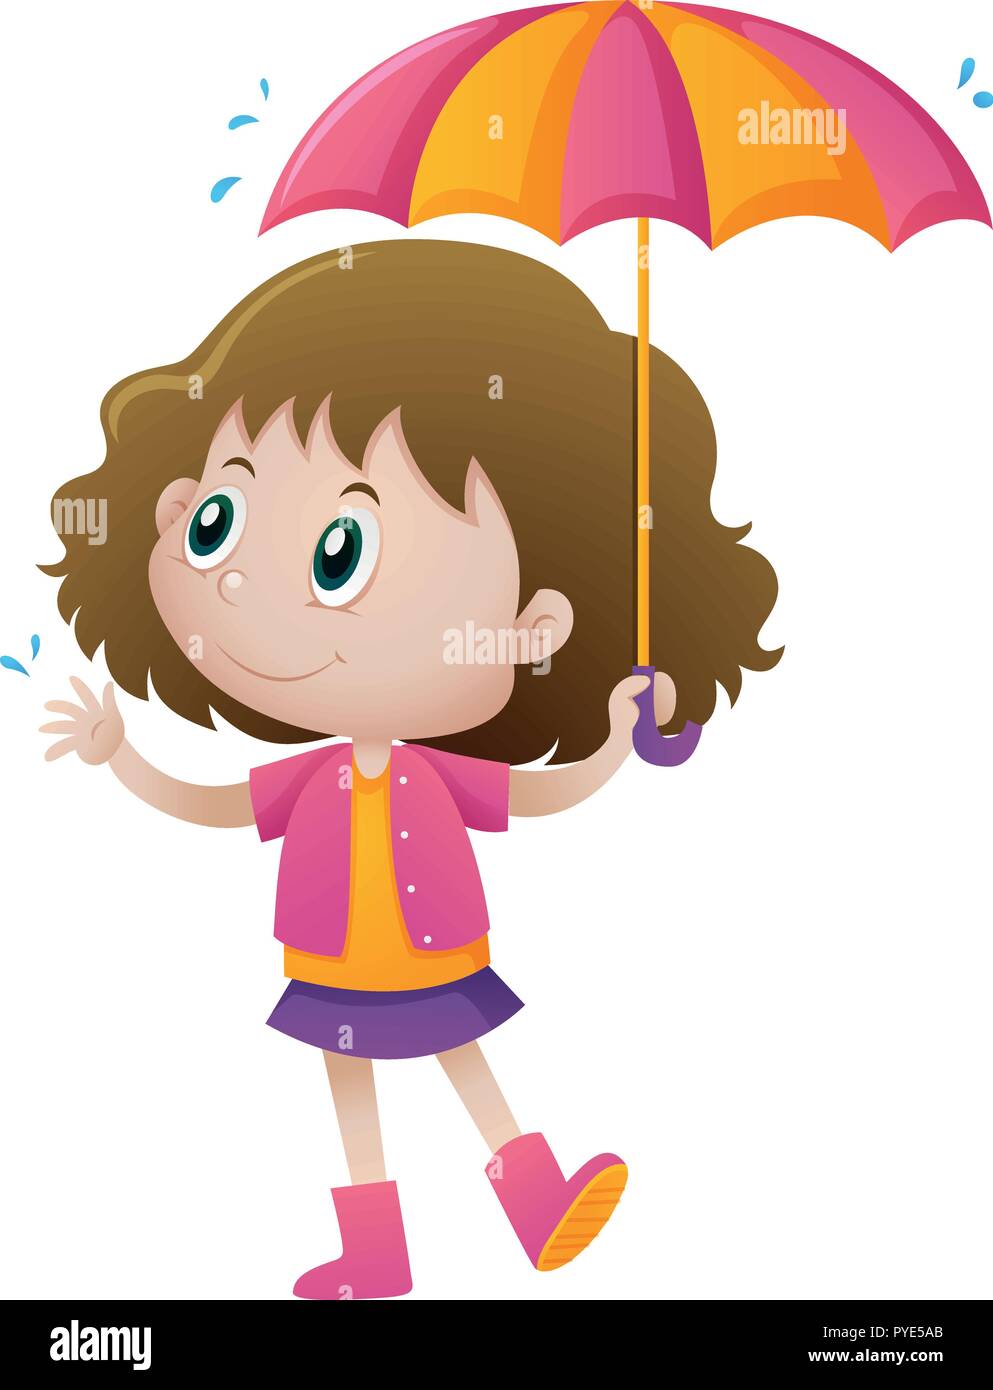 Little girl holding umbrella illustration Stock Vector